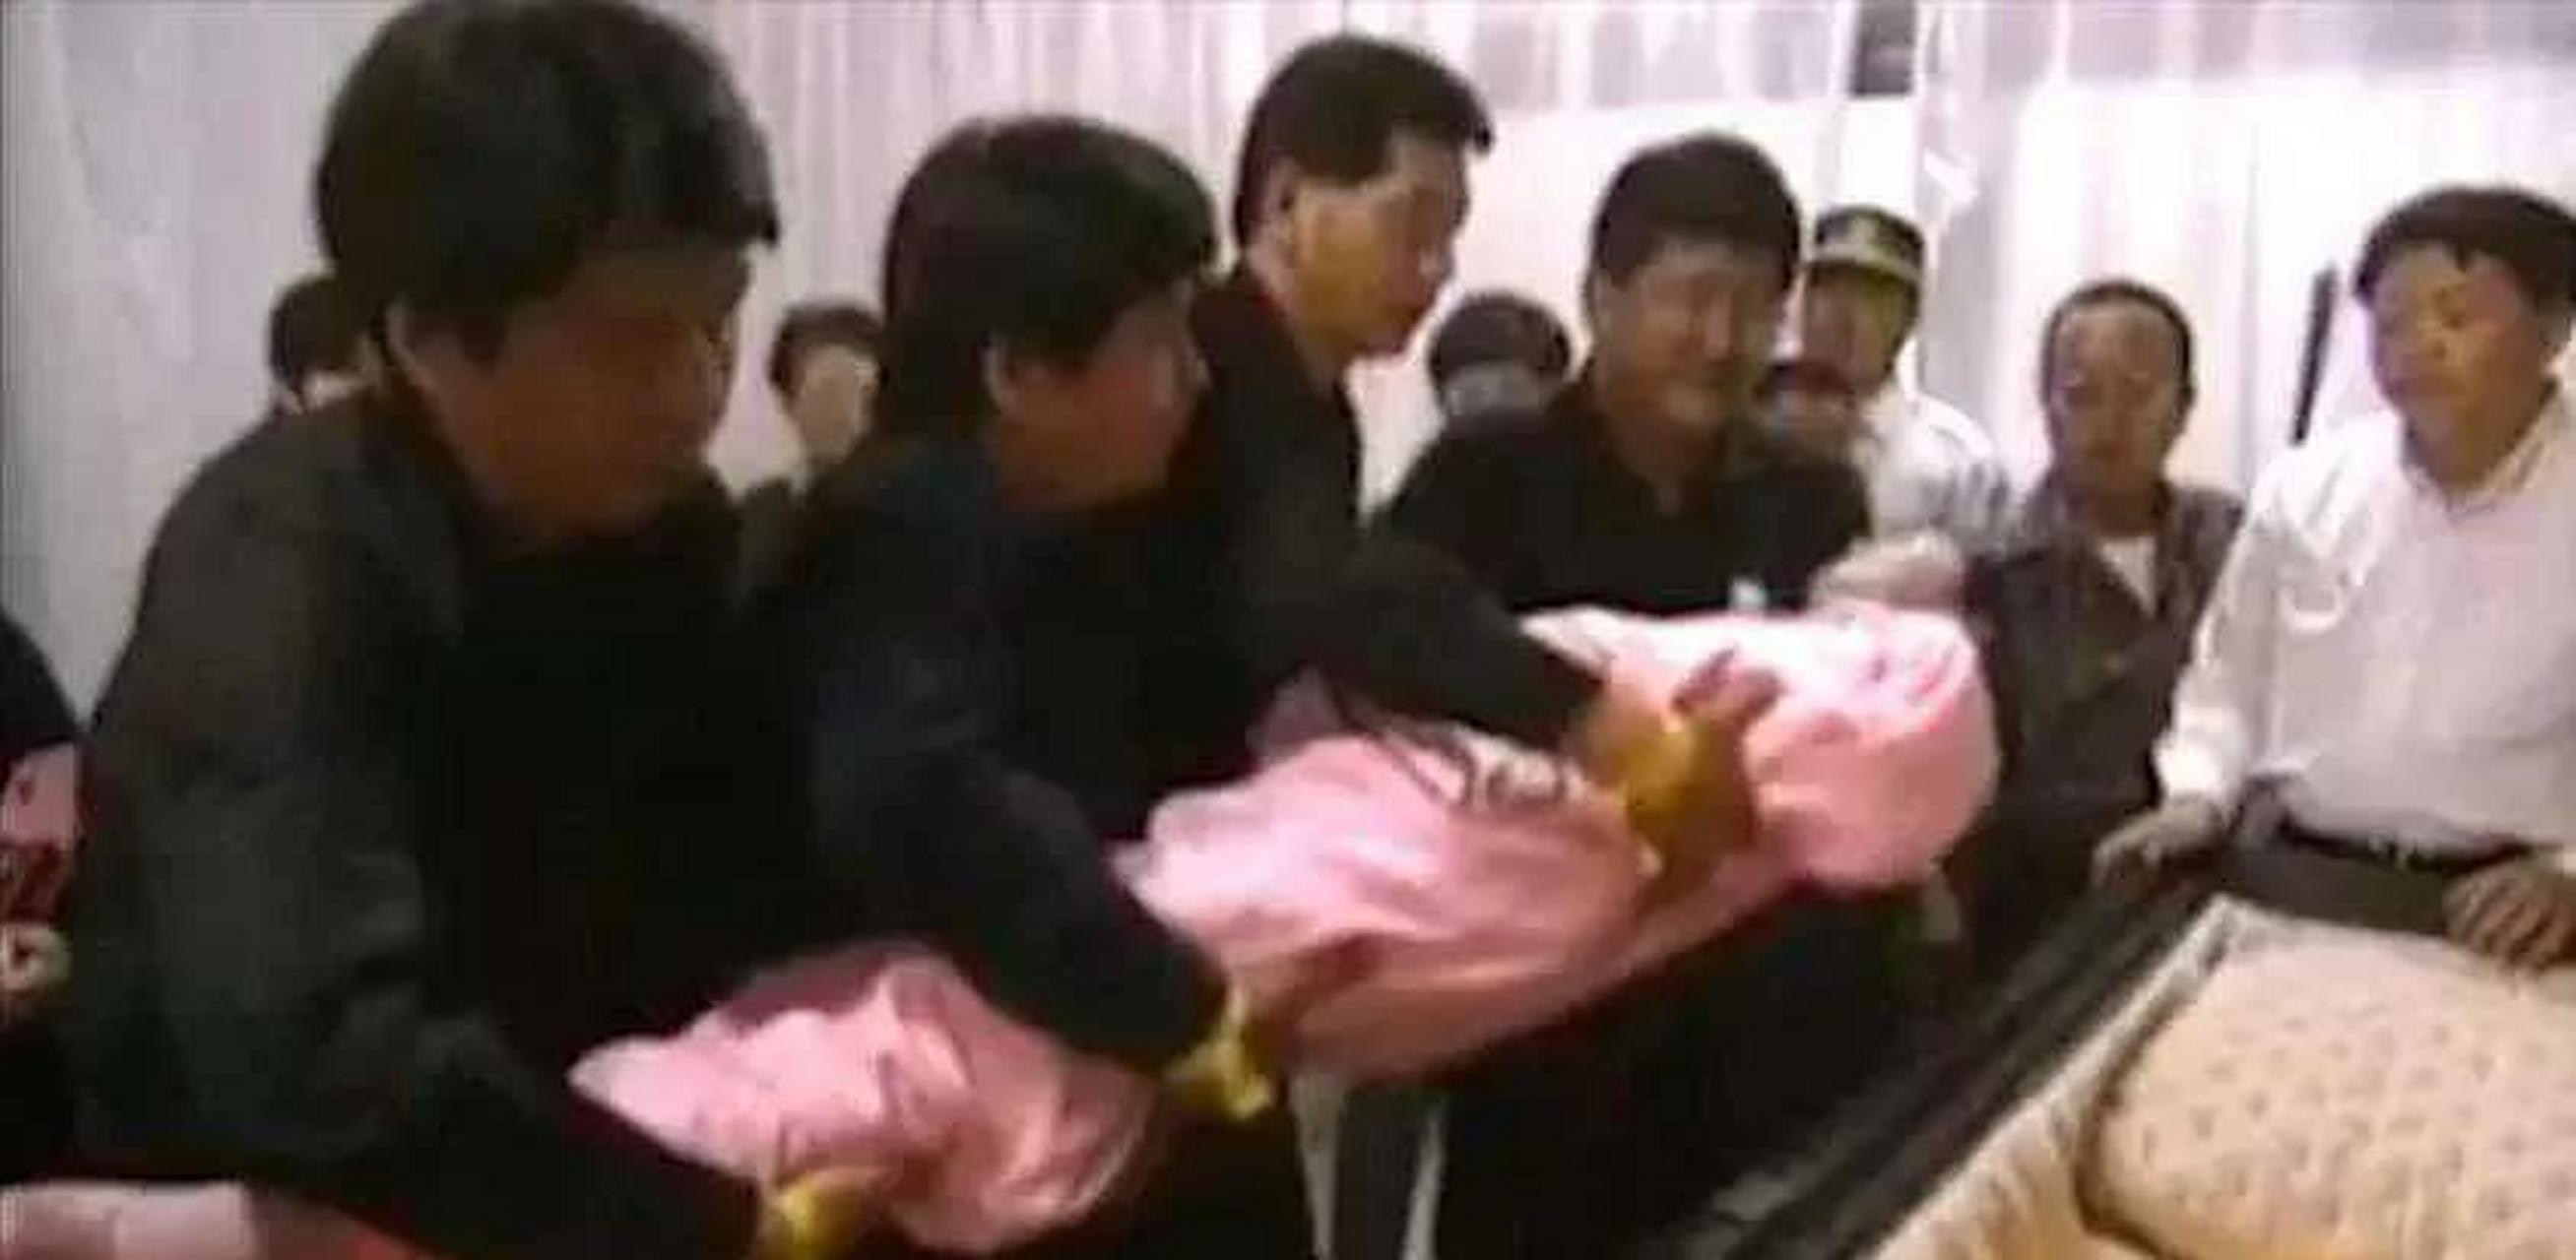 1995年泰国清迈,邓丽君遗体正被入殓师放入棺椁,她身穿粉红寿衣身体